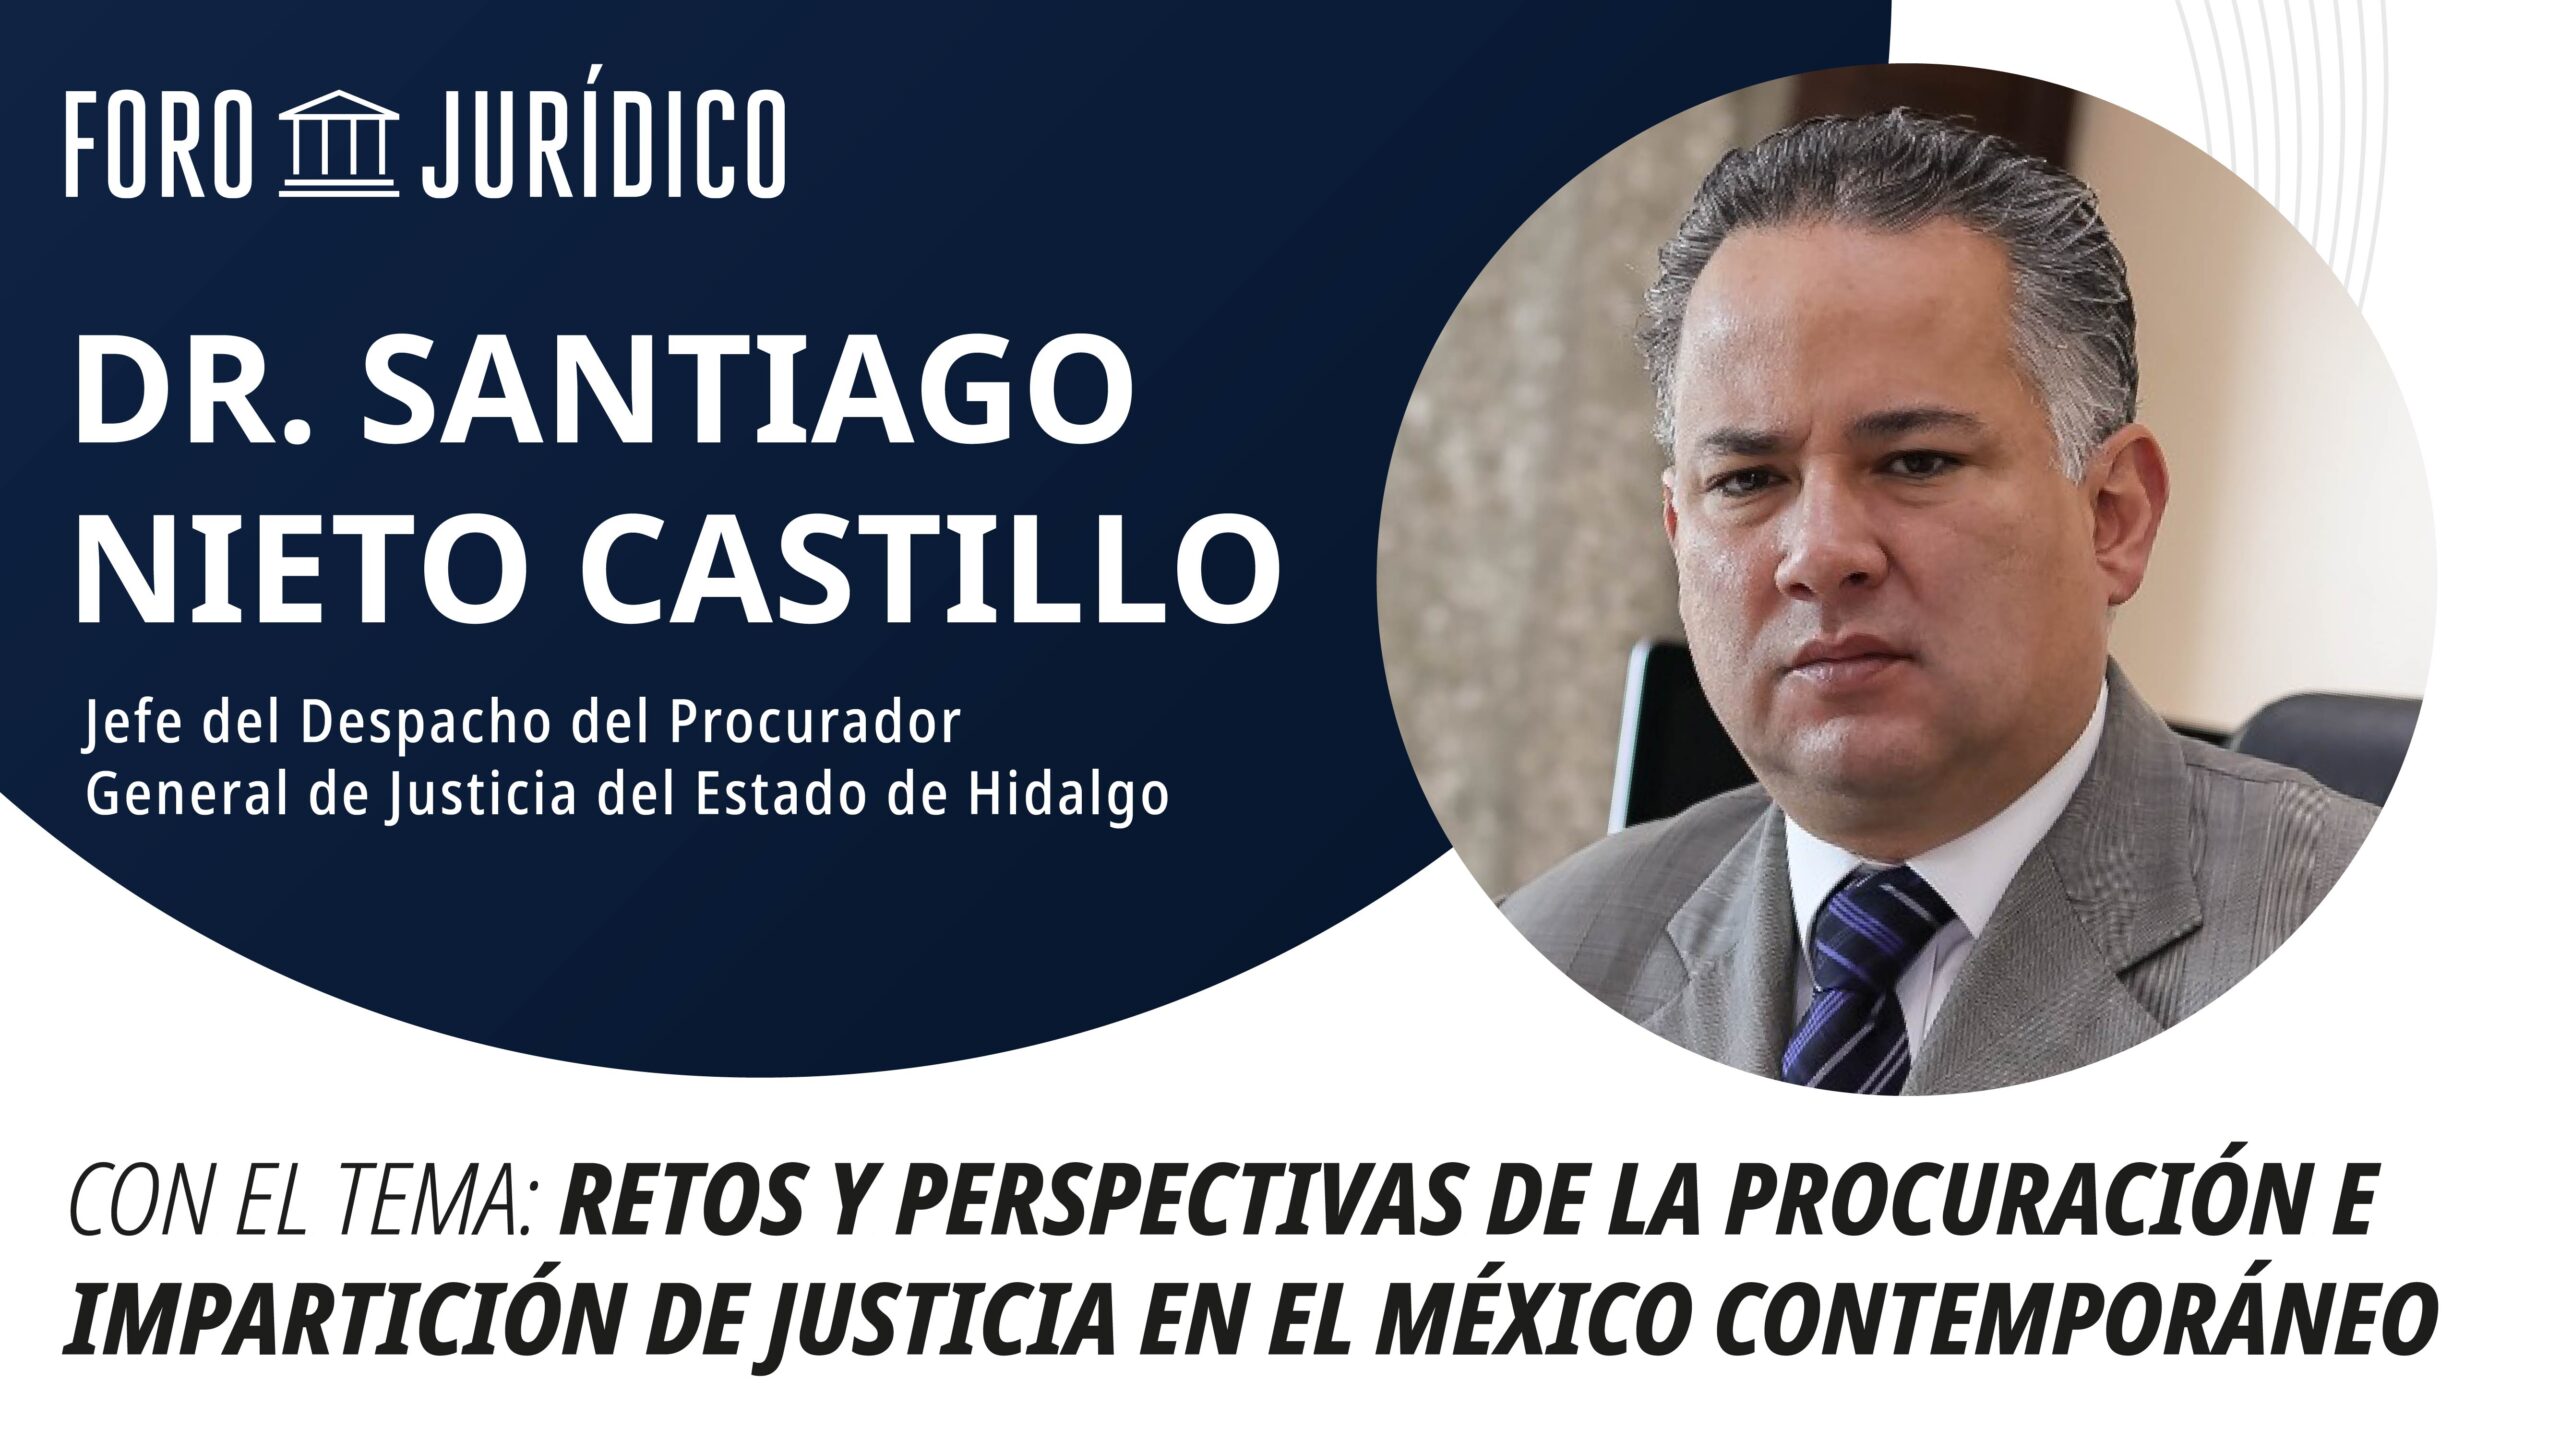 foro jurídico Retos y perspectivas de la Procuración de Justicia e impunidad en México